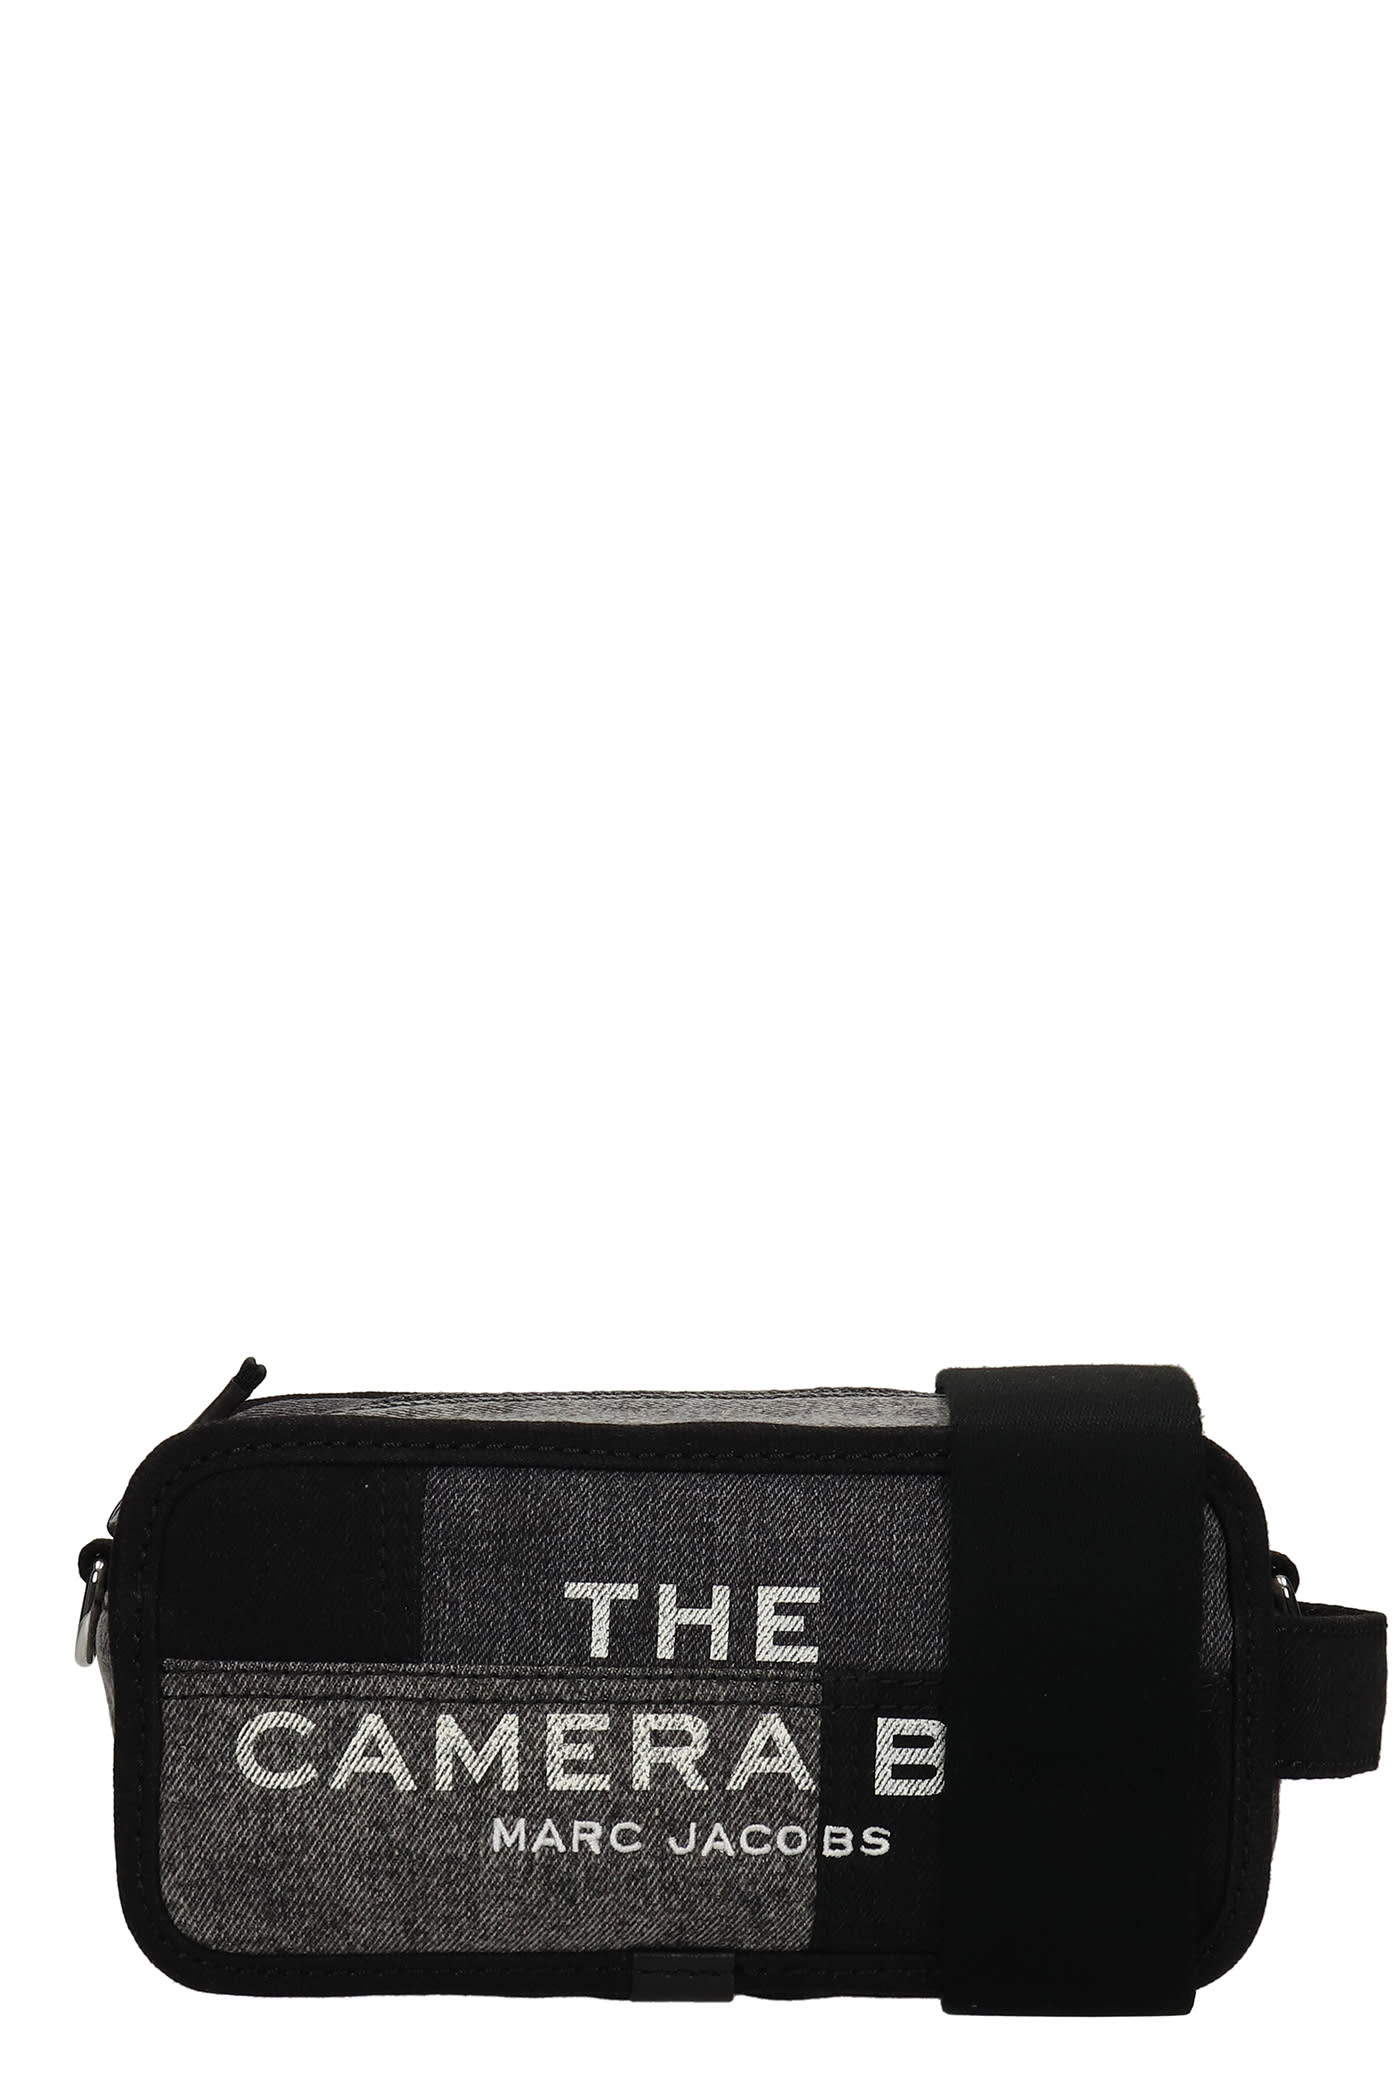 Marc Jacobs The Camera Bag Shoulder Bag In Black Cotton